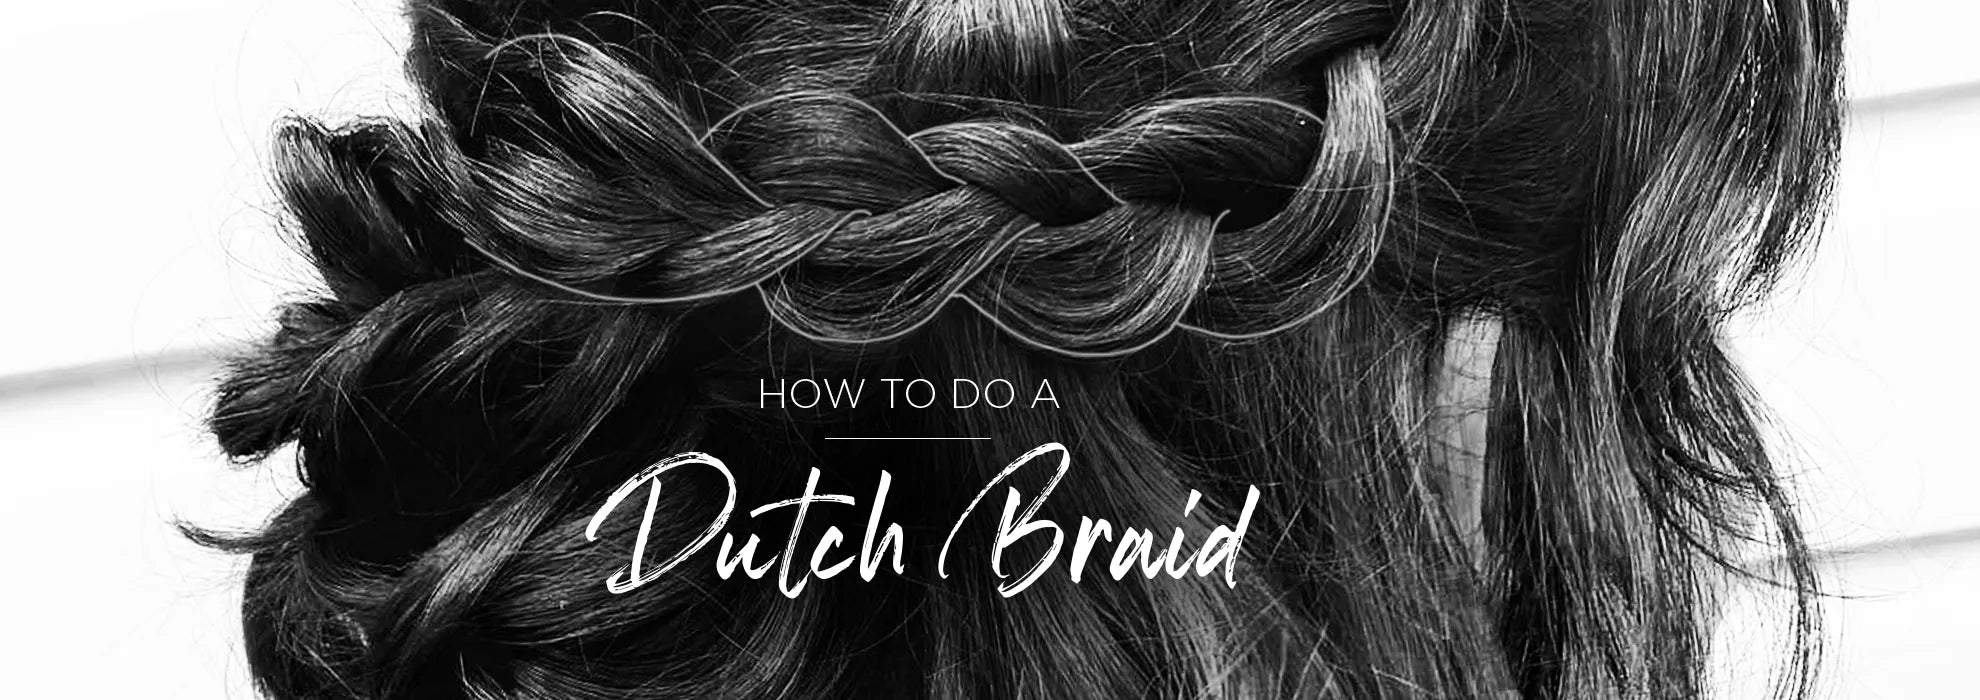 Dutch Braids For Beginners! Easy single dutch braid Step by Step